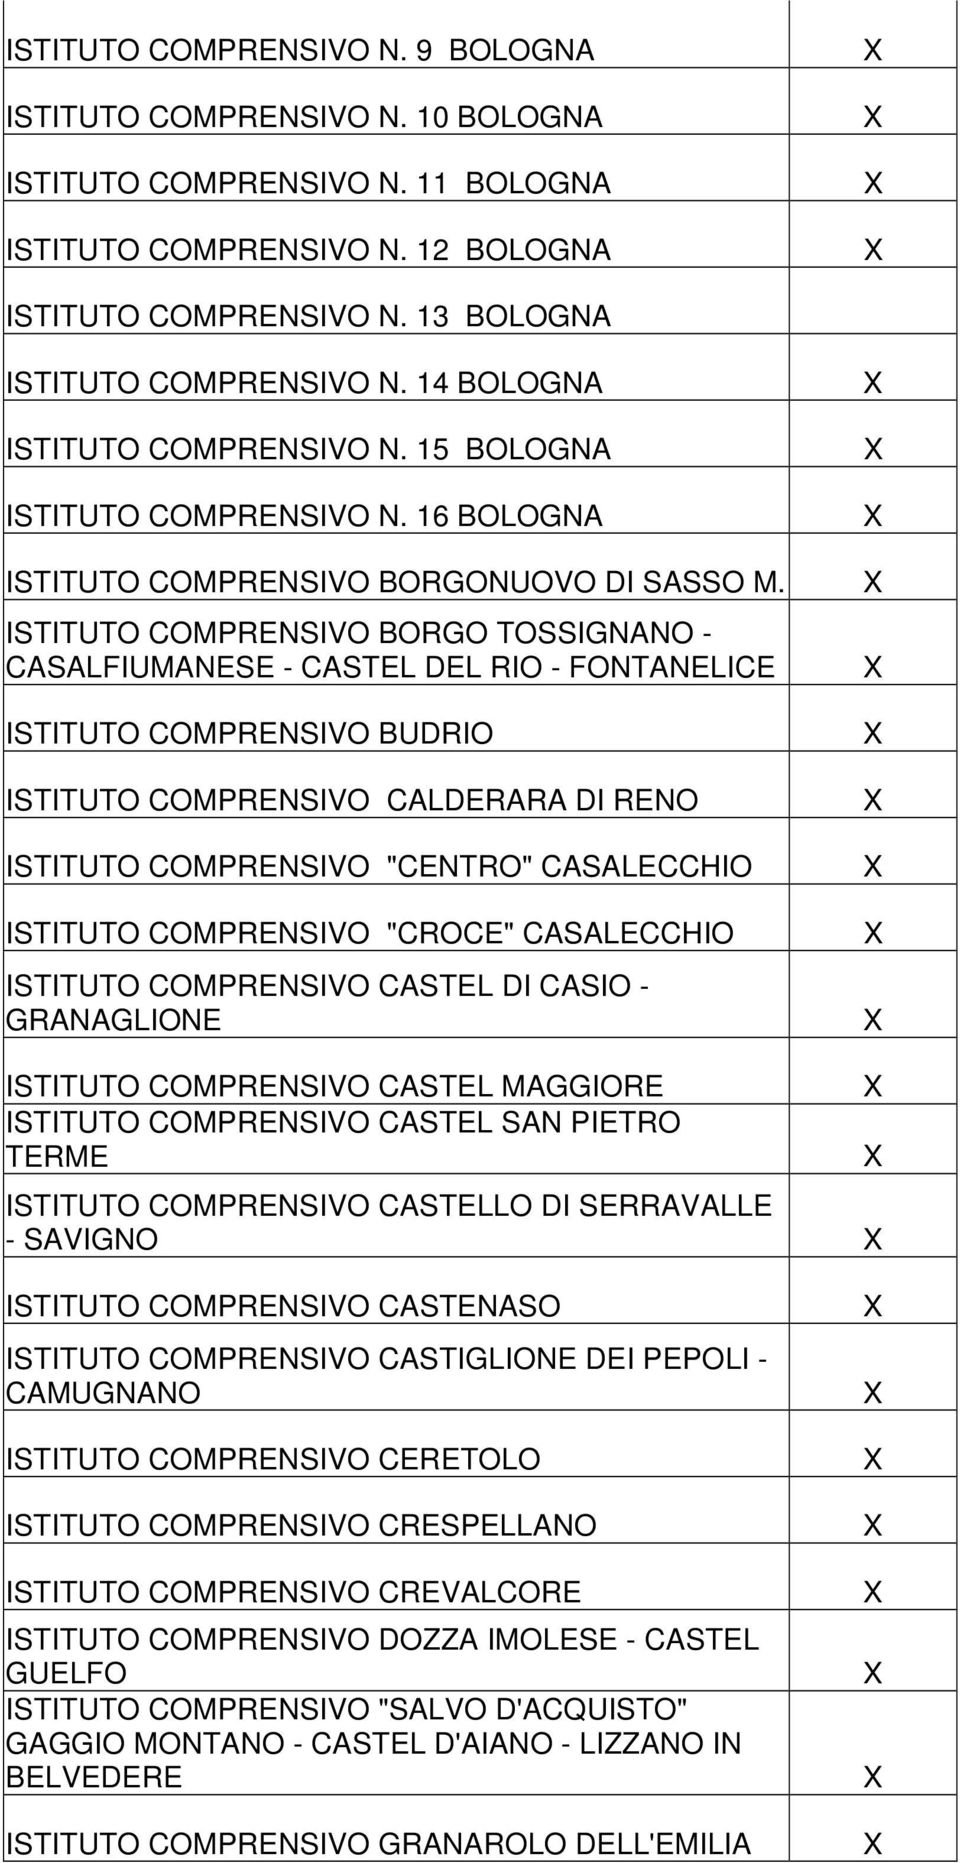 ISTITUTO COMPRENSIVO BORGO TOSSIGNANO - CASALFIUMANESE - CASTEL DEL RIO - FONTANELICE ISTITUTO COMPRENSIVO BUDRIO ISTITUTO COMPRENSIVO CALDERARA DI RENO ISTITUTO COMPRENSIVO "CENTRO" CASALECCHIO